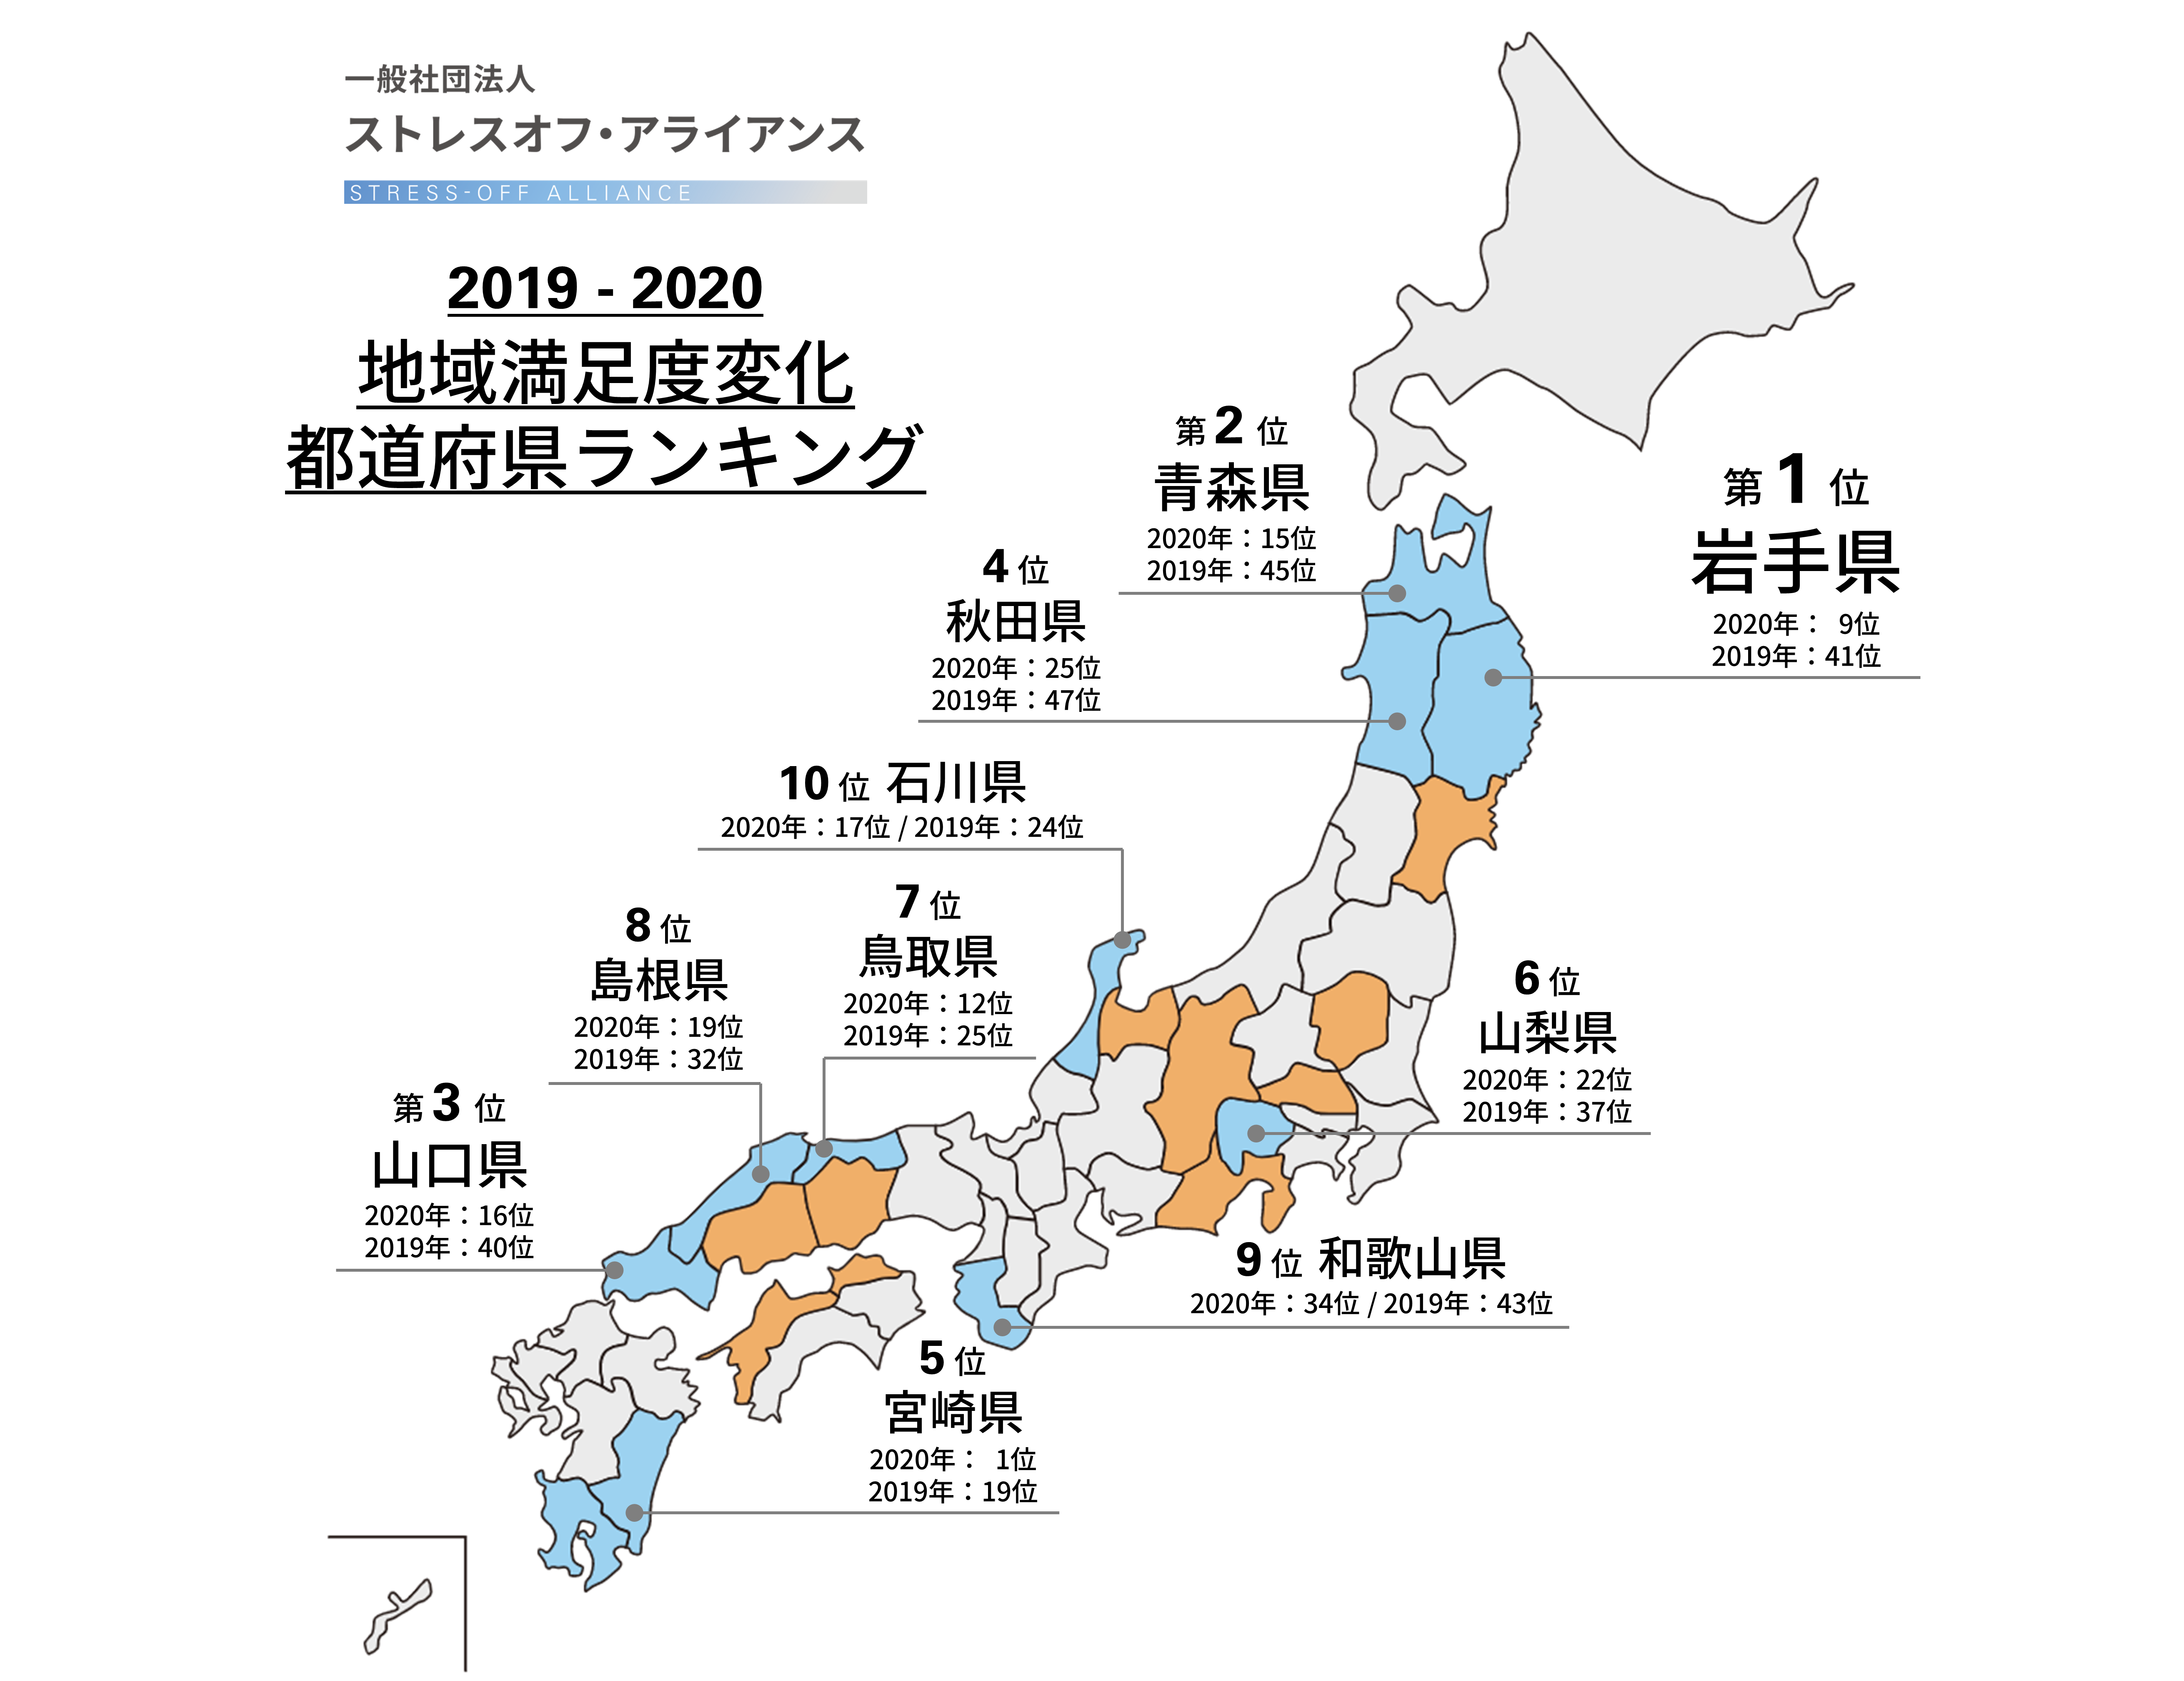 2020 ランキング 道府県 都 人口 2045年市町村将来推計人口ランキング